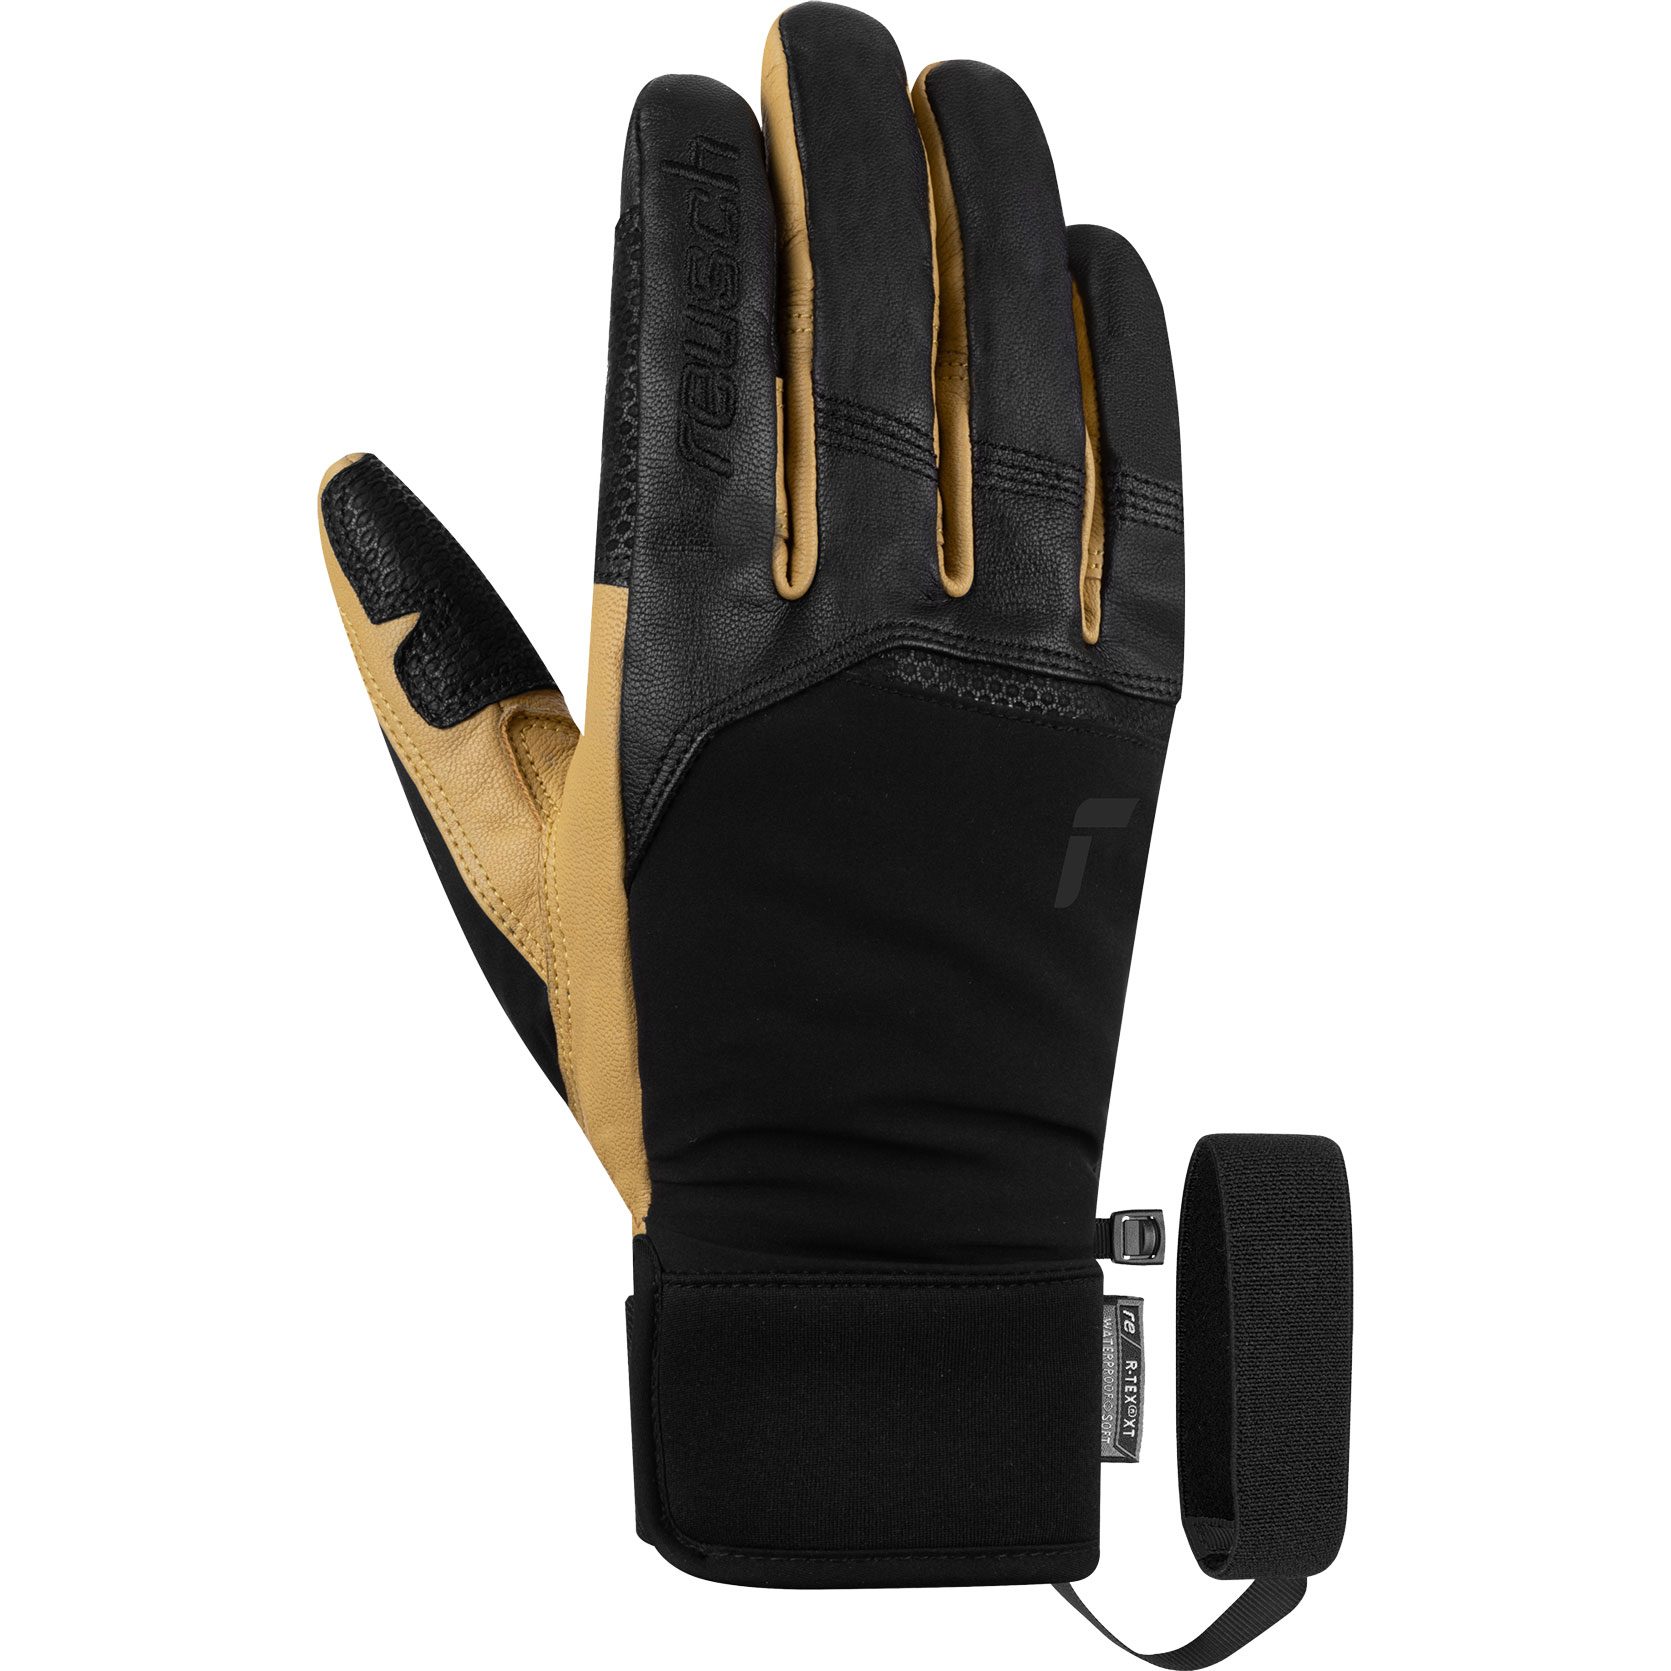 Reusch - XT im Shop kaufen Freeski-Handschuhe R-TEX® Lleon black Herren Sport Bittl